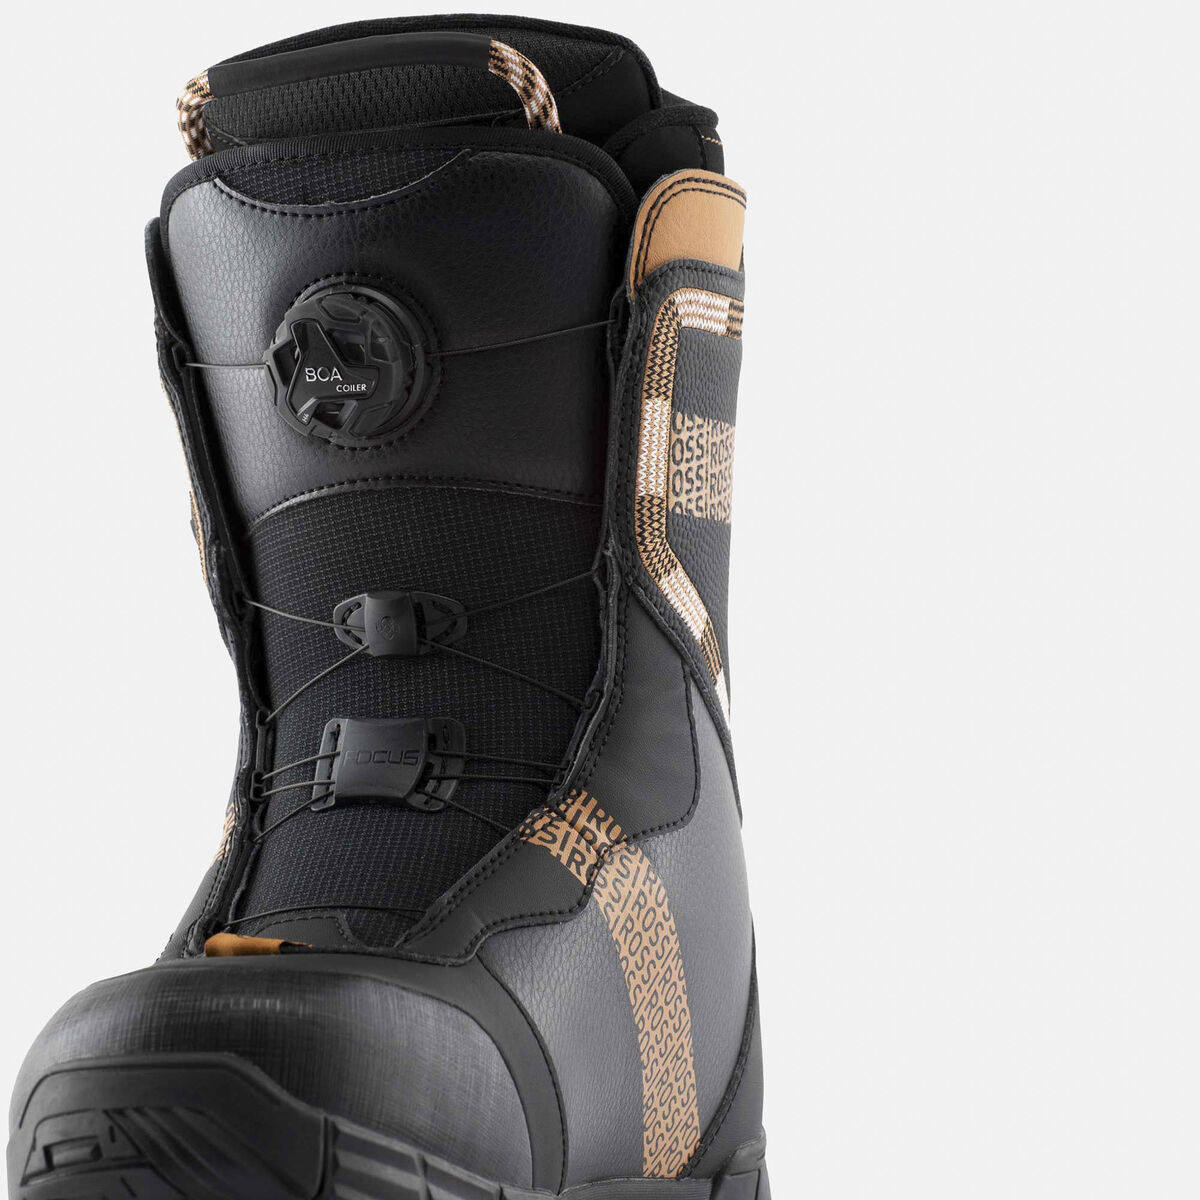 Chaussure et boots snowboard pour homme, femme à serrage BOA